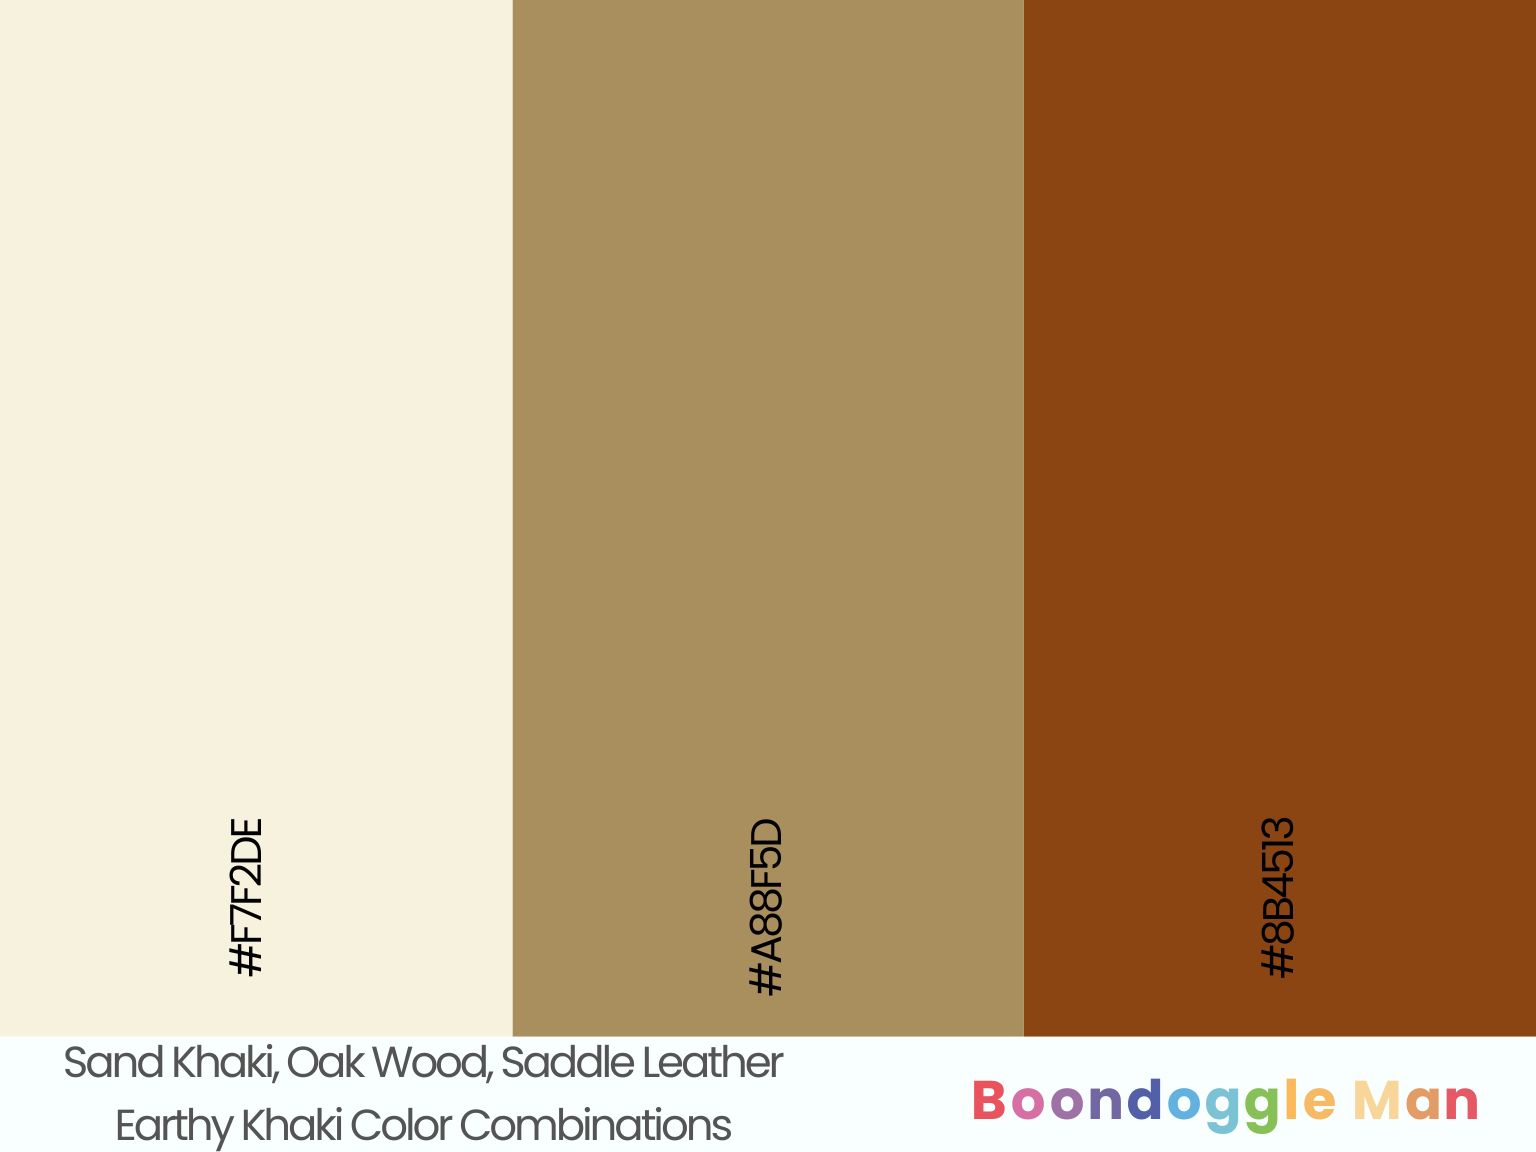 Sand Khaki, Oak Wood, Saddle Leather